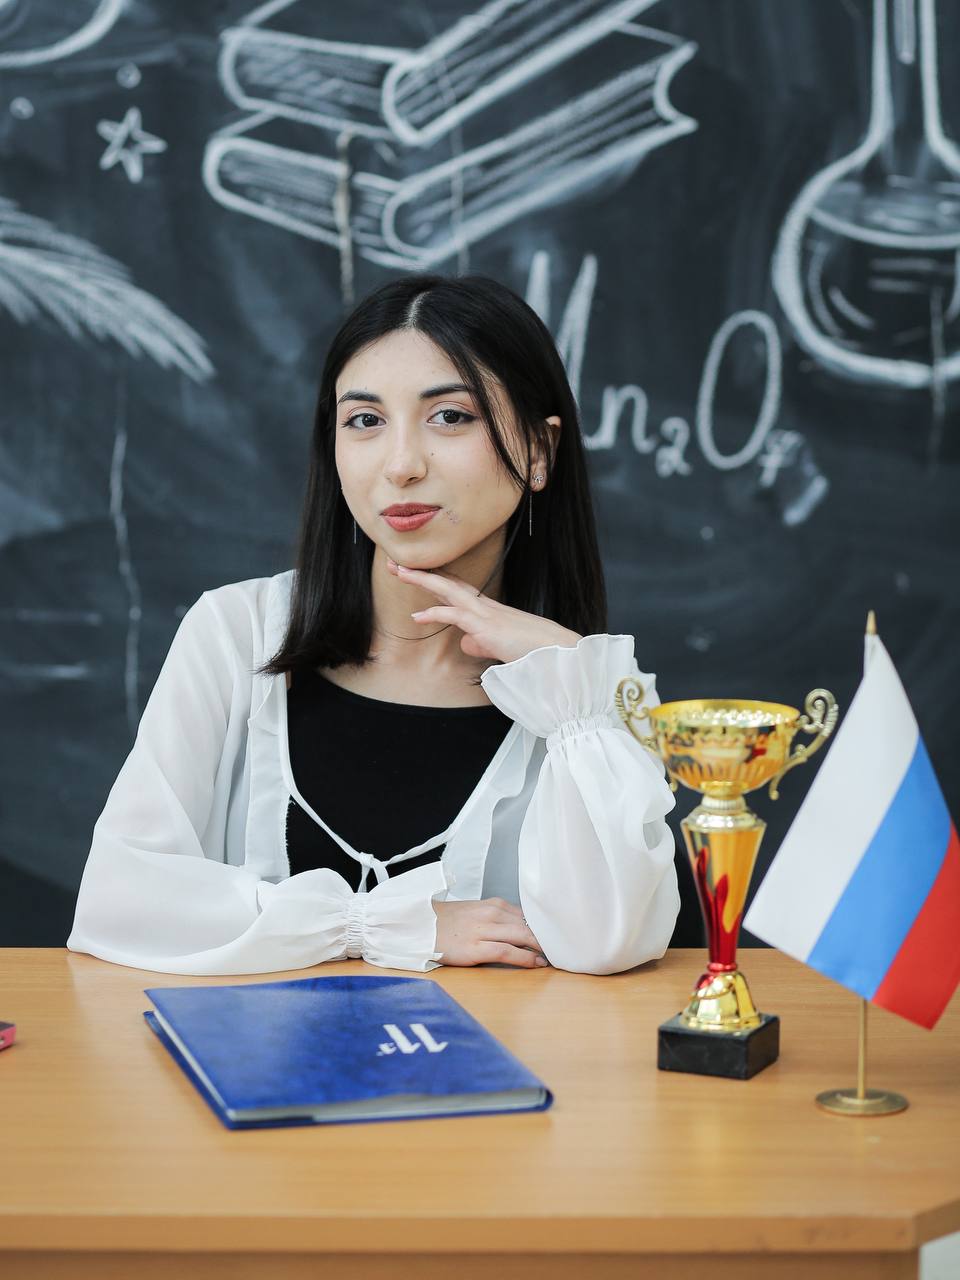 Школьница из Табасаранского района Дагестана сдала ЕГЭ на 100 баллов